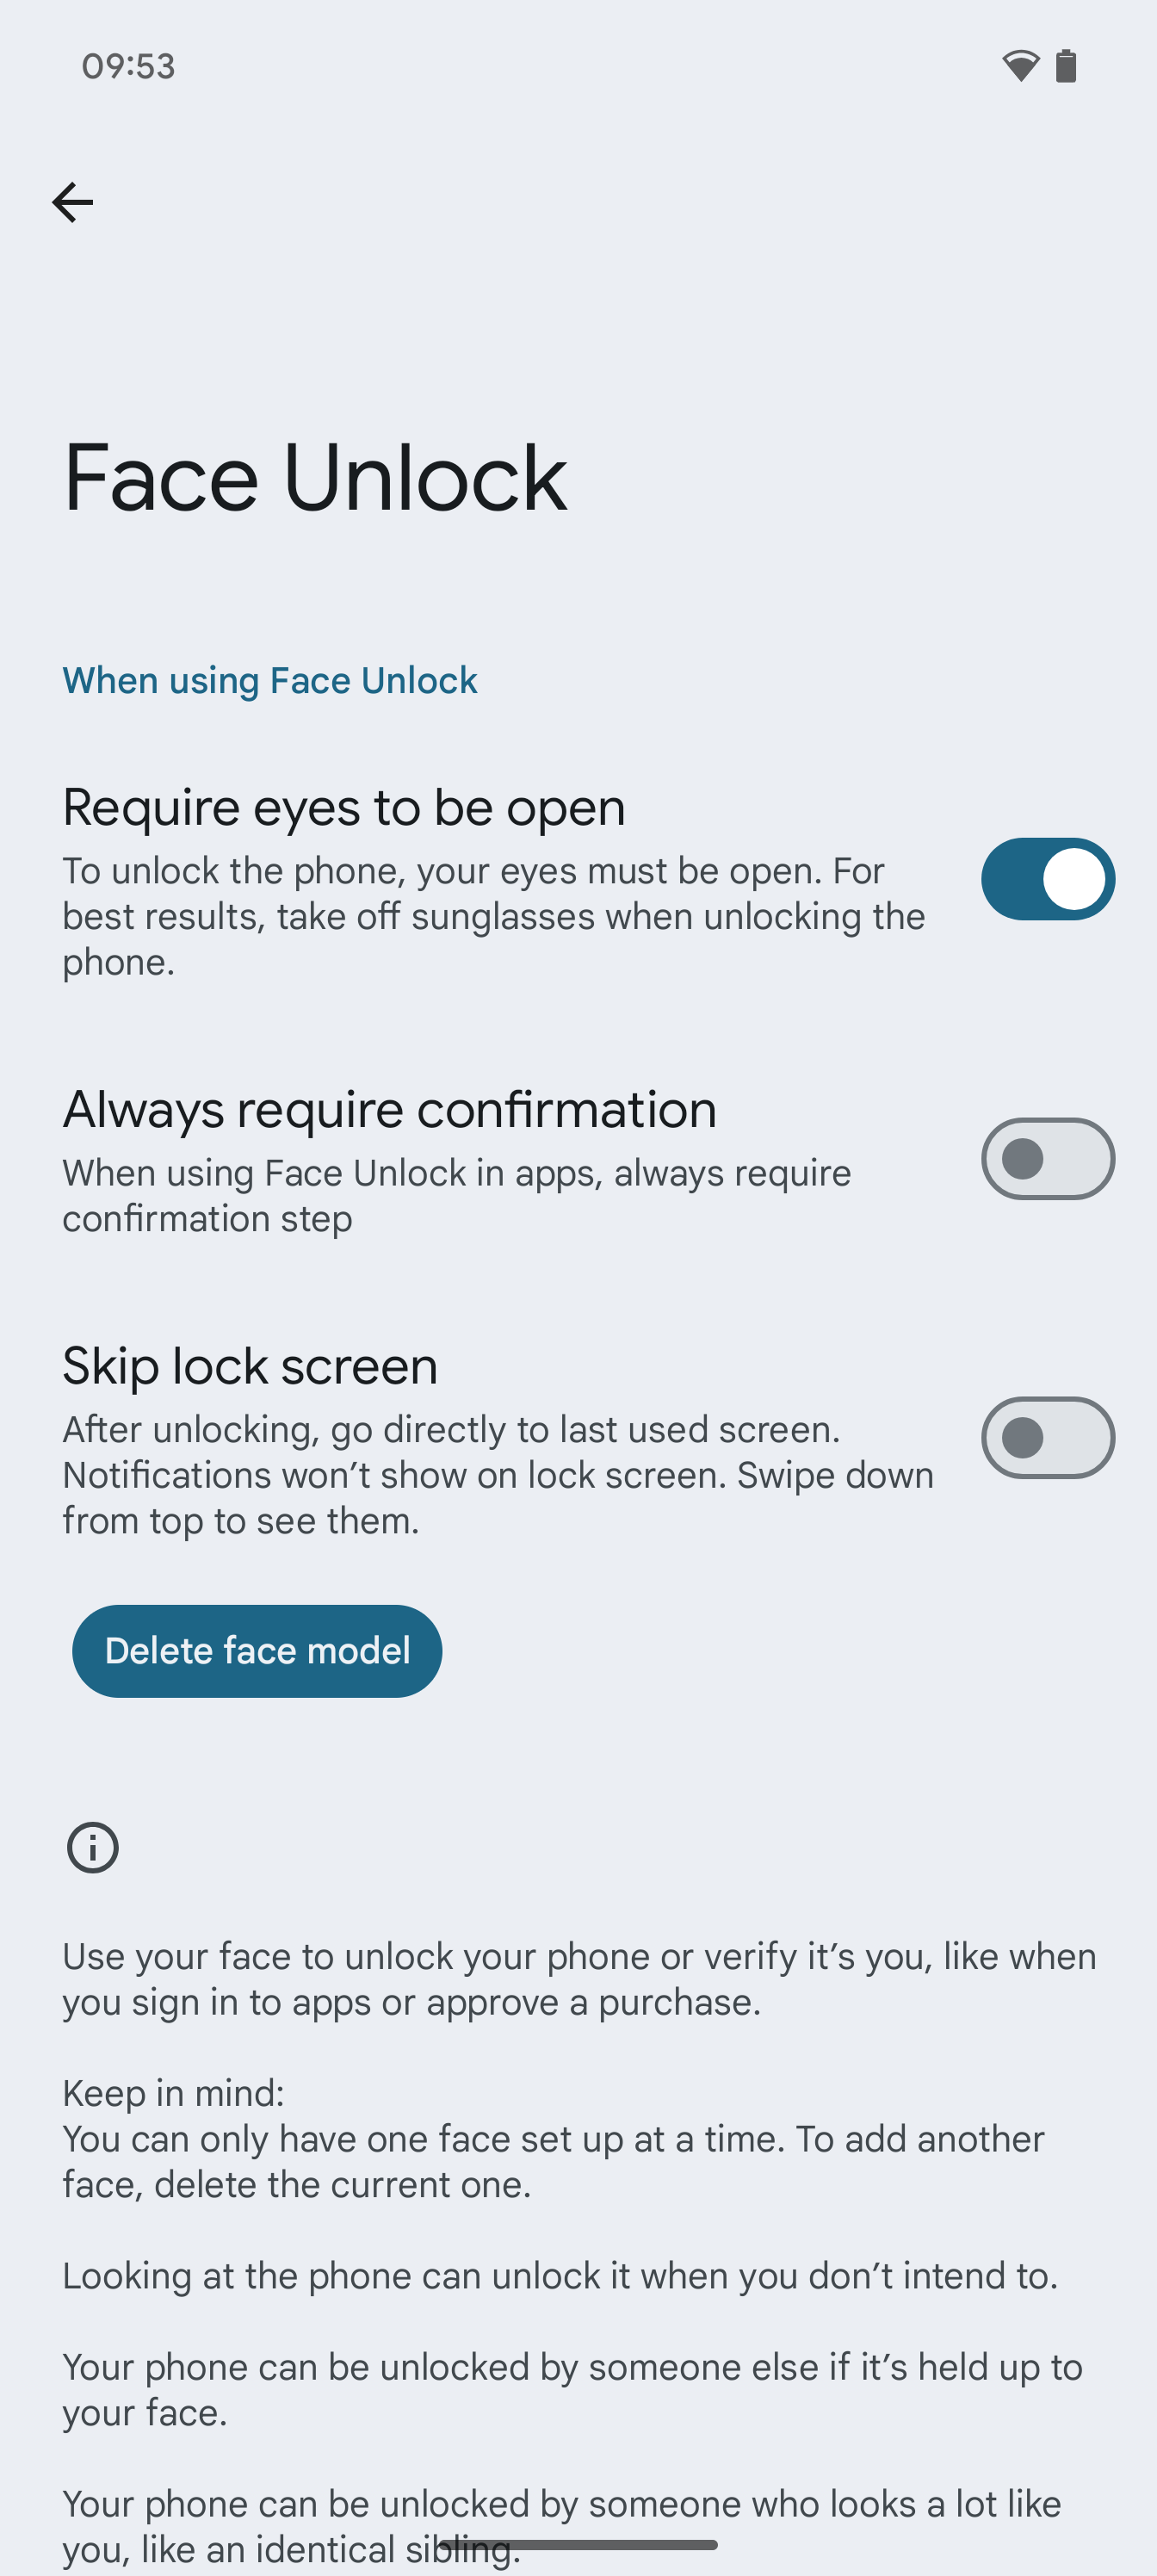 Ustawienia odblokowania odciskiem palca dla Androida 15